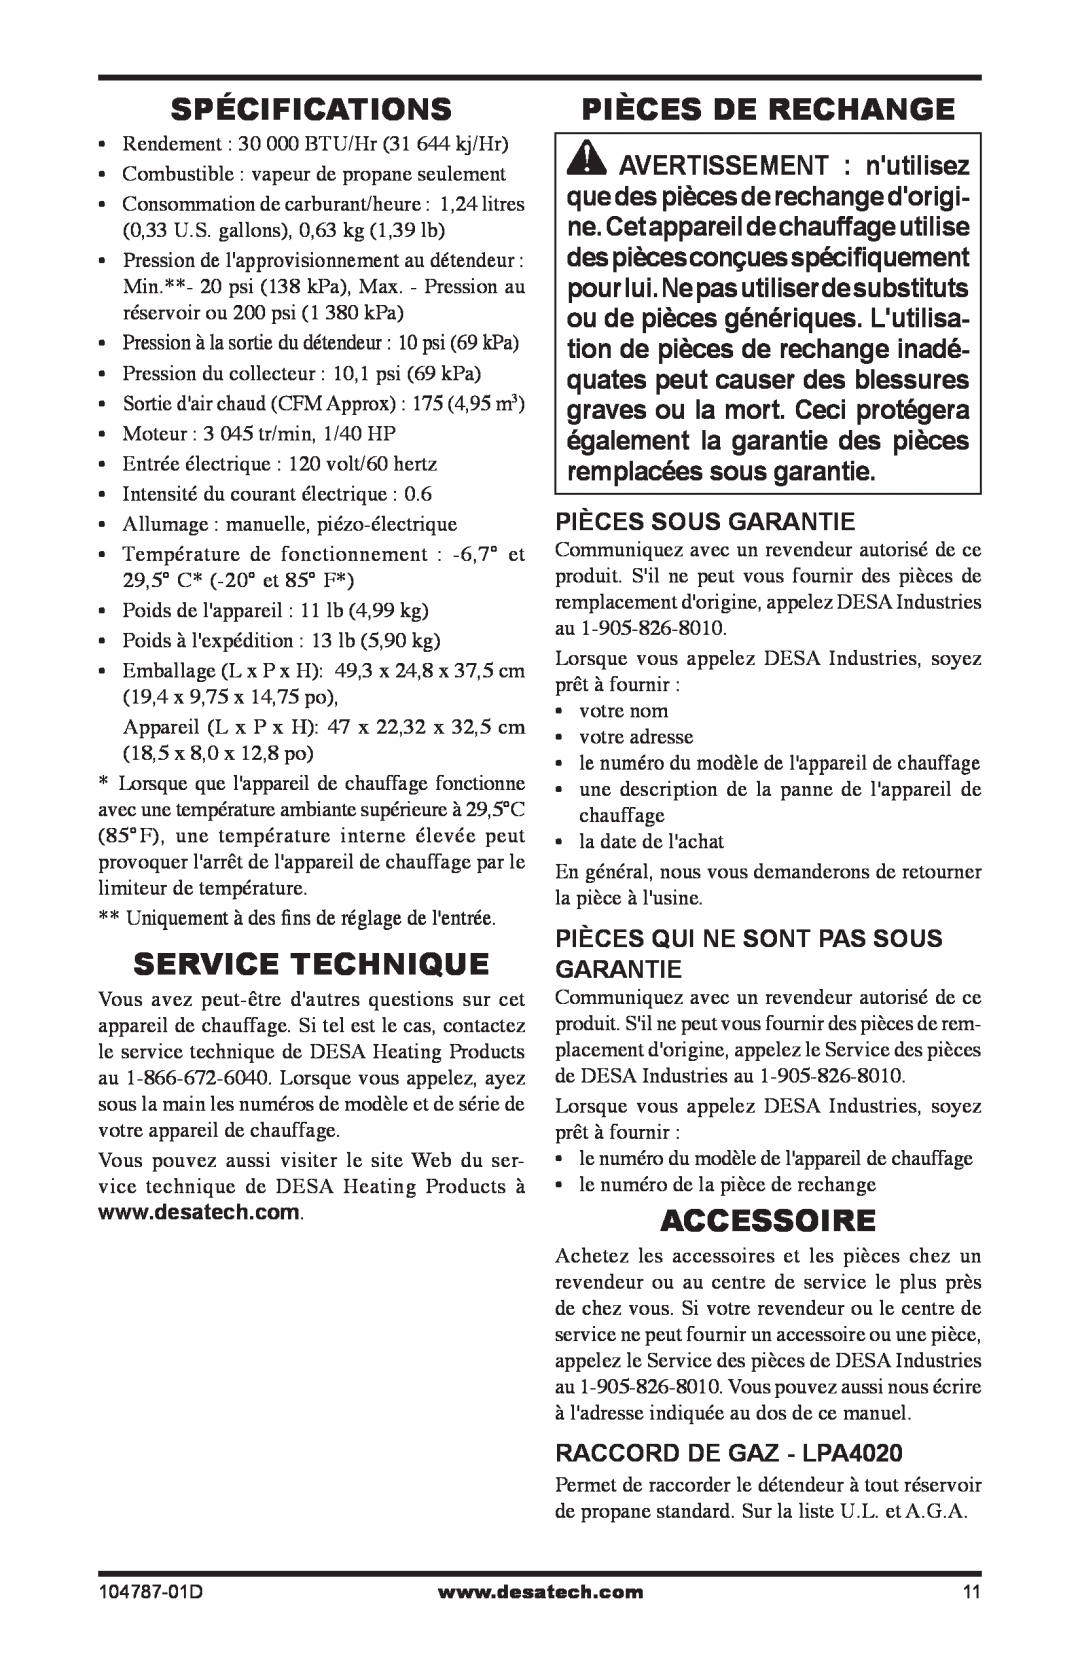 Desa RCLP30 owner manual Spécifications, Service Technique, Pièces De Rechange, Accessoire, Pièces Sous Garantie 